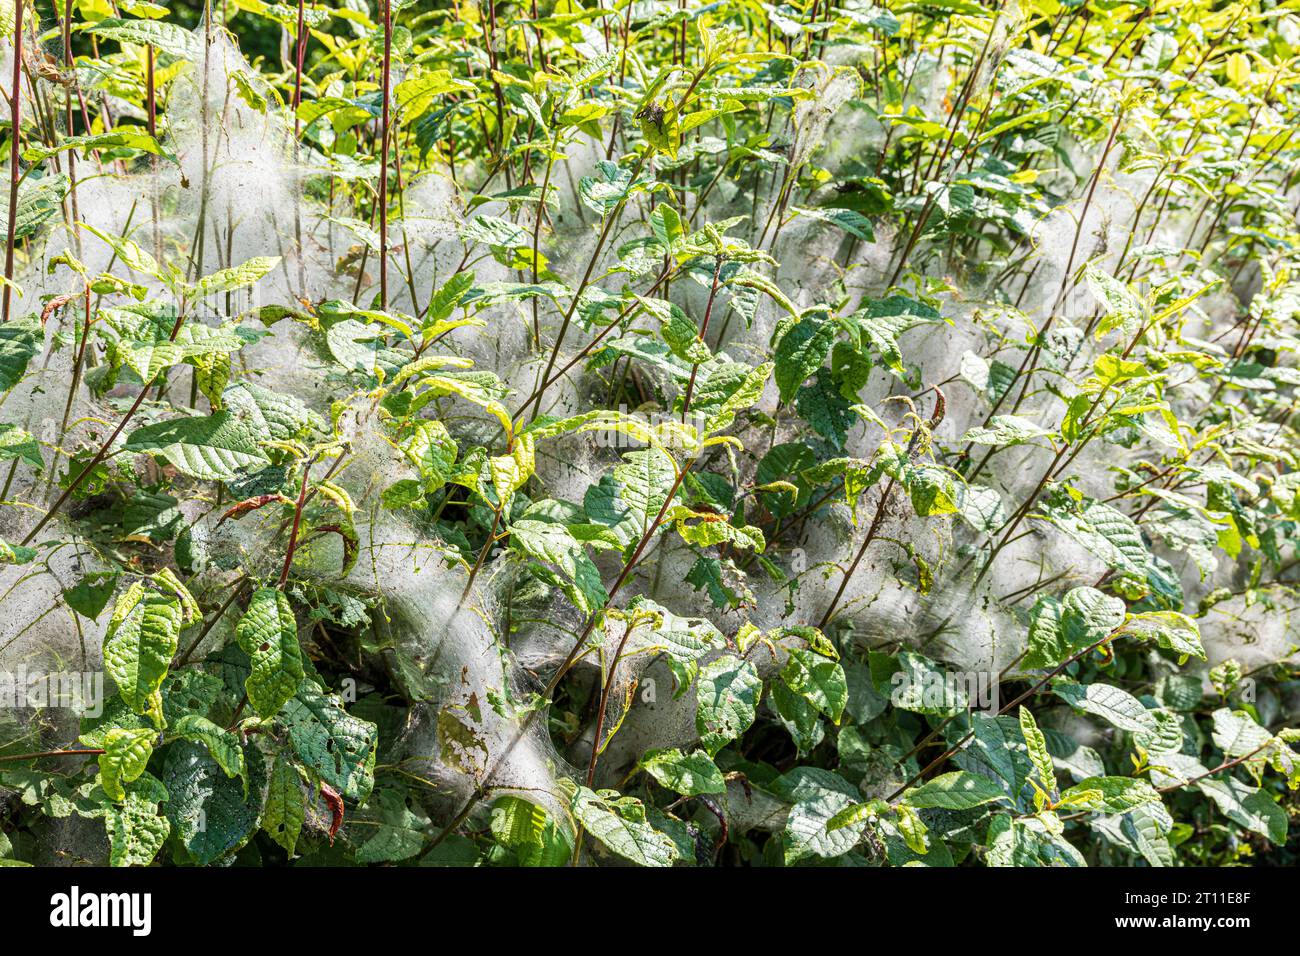 Eine Hecke mit seidenspinnenartigen Netzen (möglicherweise von Raupen aus Erminen-Moths Yponomeutidae geschlüpft) Anfang Juni in Cumbria, England, Großbritannien. Stockfoto